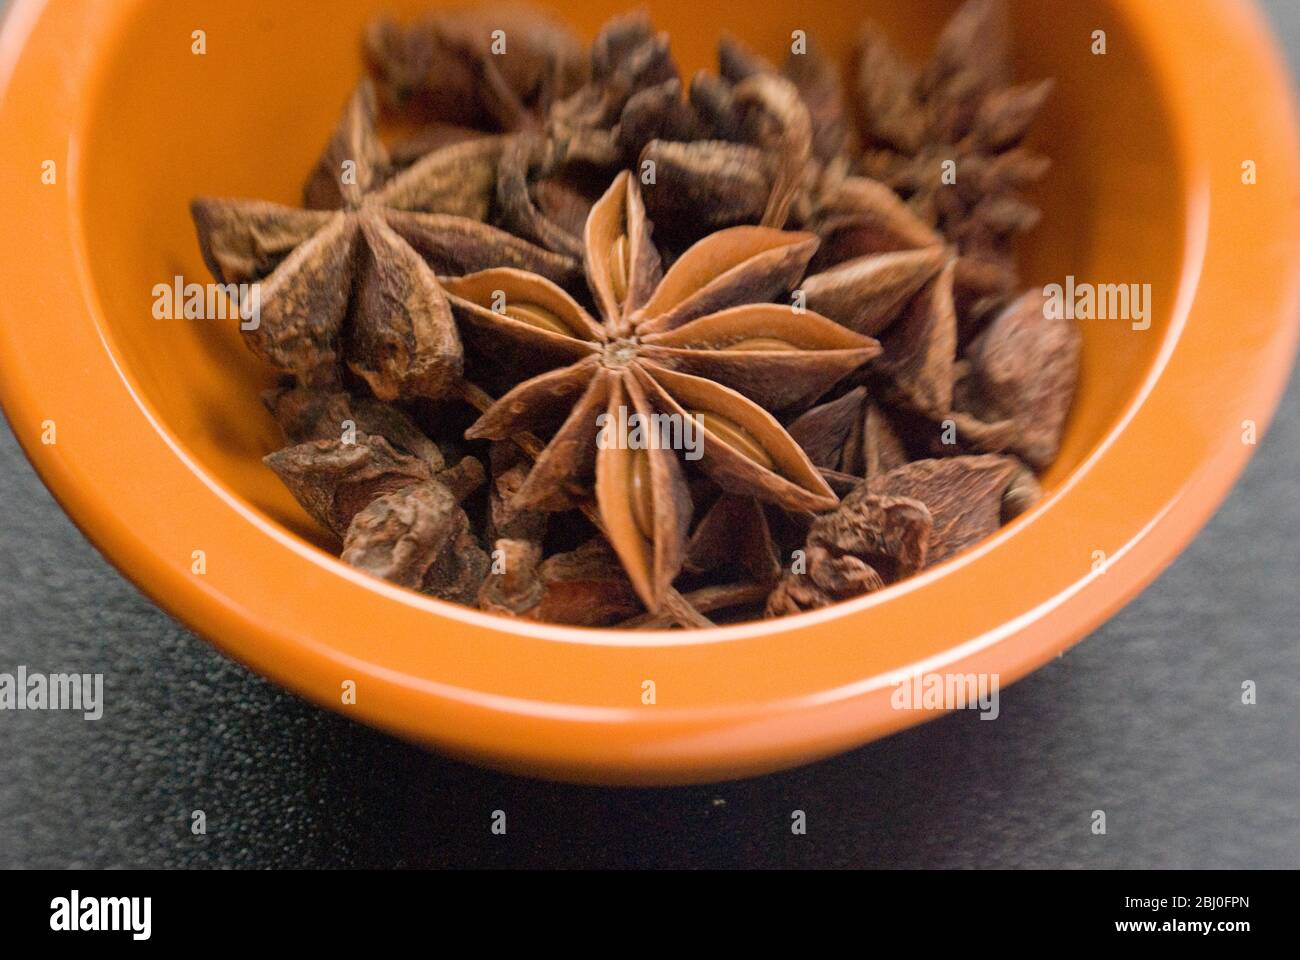 Getrocknete Sternanis in einer kleinen Schüssel. Auch bekannt als Sternanis, badiane oder chinesischer Sternanis. - Stockfoto